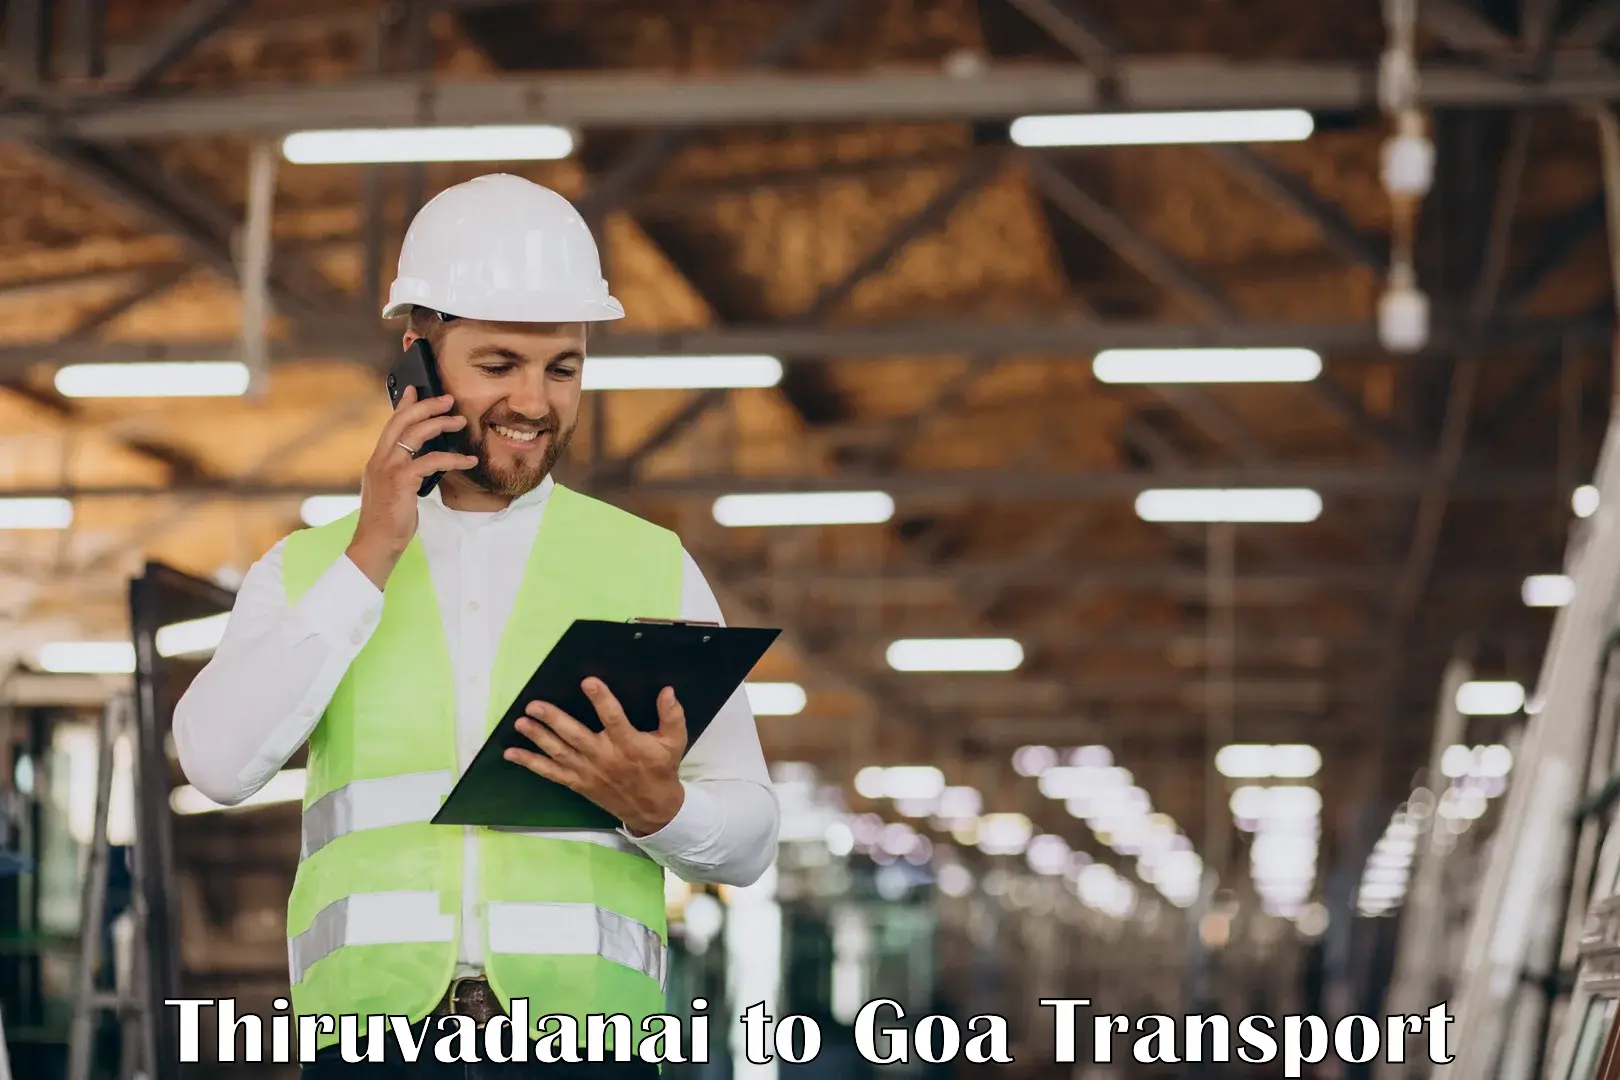 Daily transport service Thiruvadanai to Margao